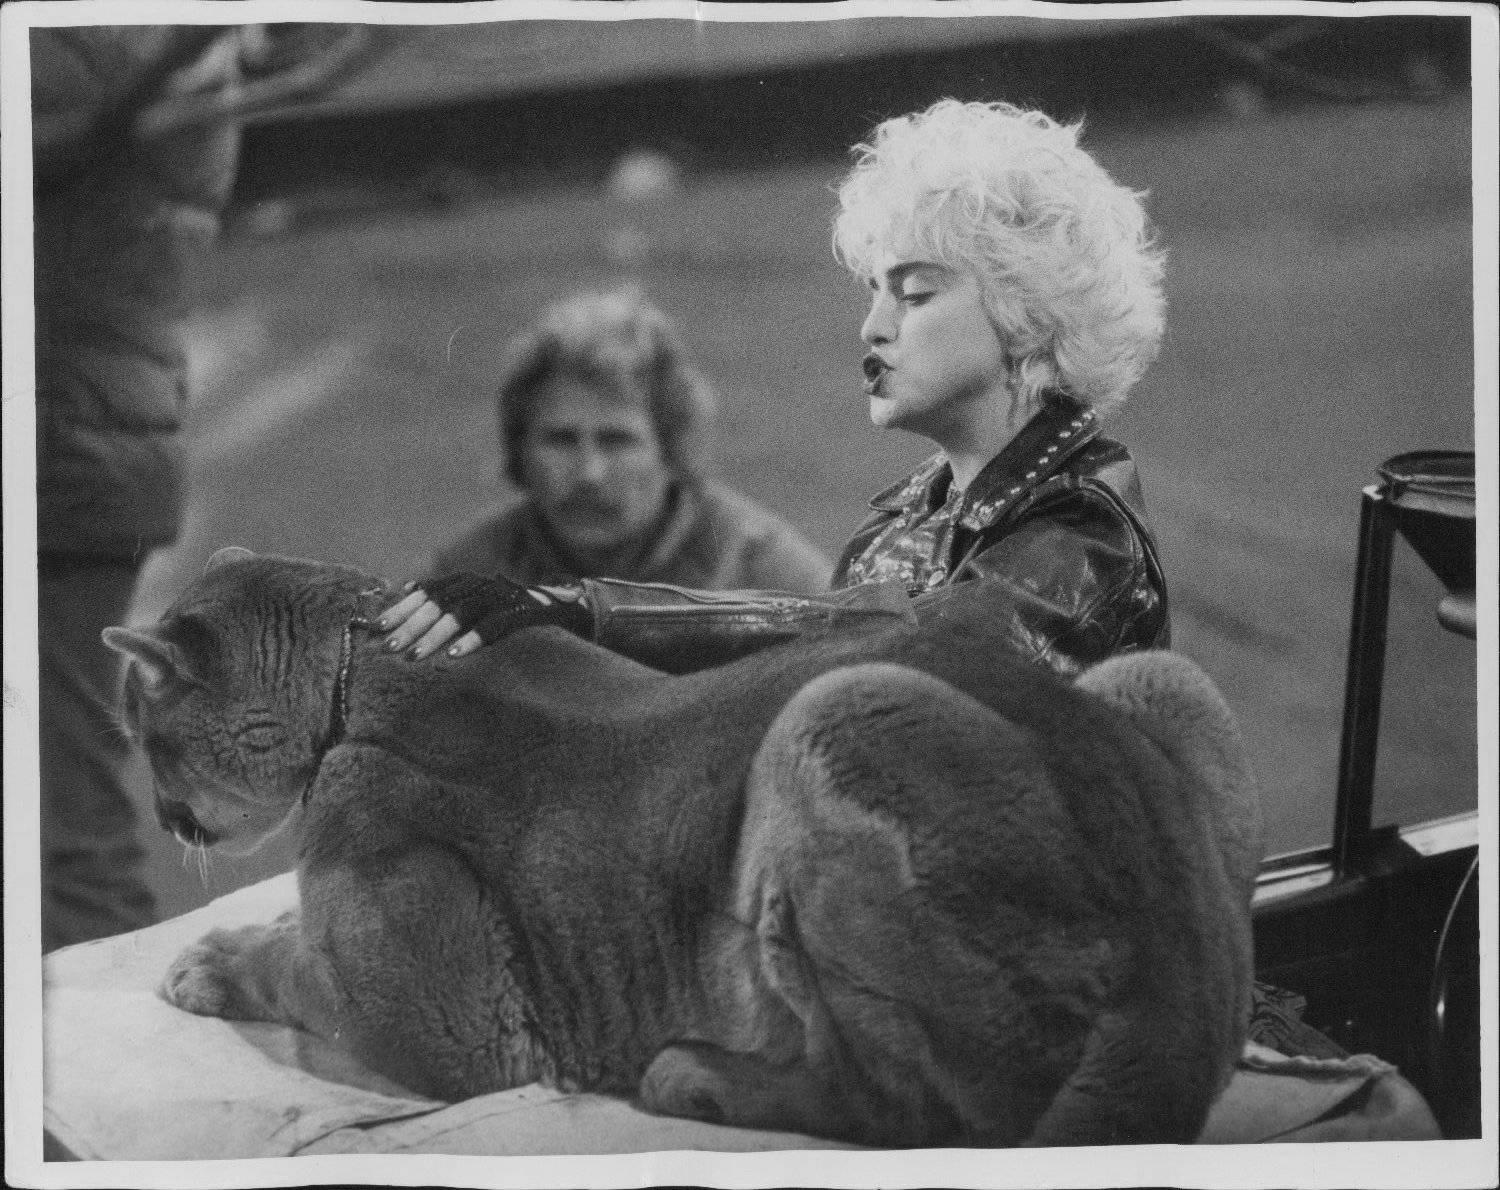 Angie Coqueran Portrait Photograph - Madonna Petting Vintage Original Photograph